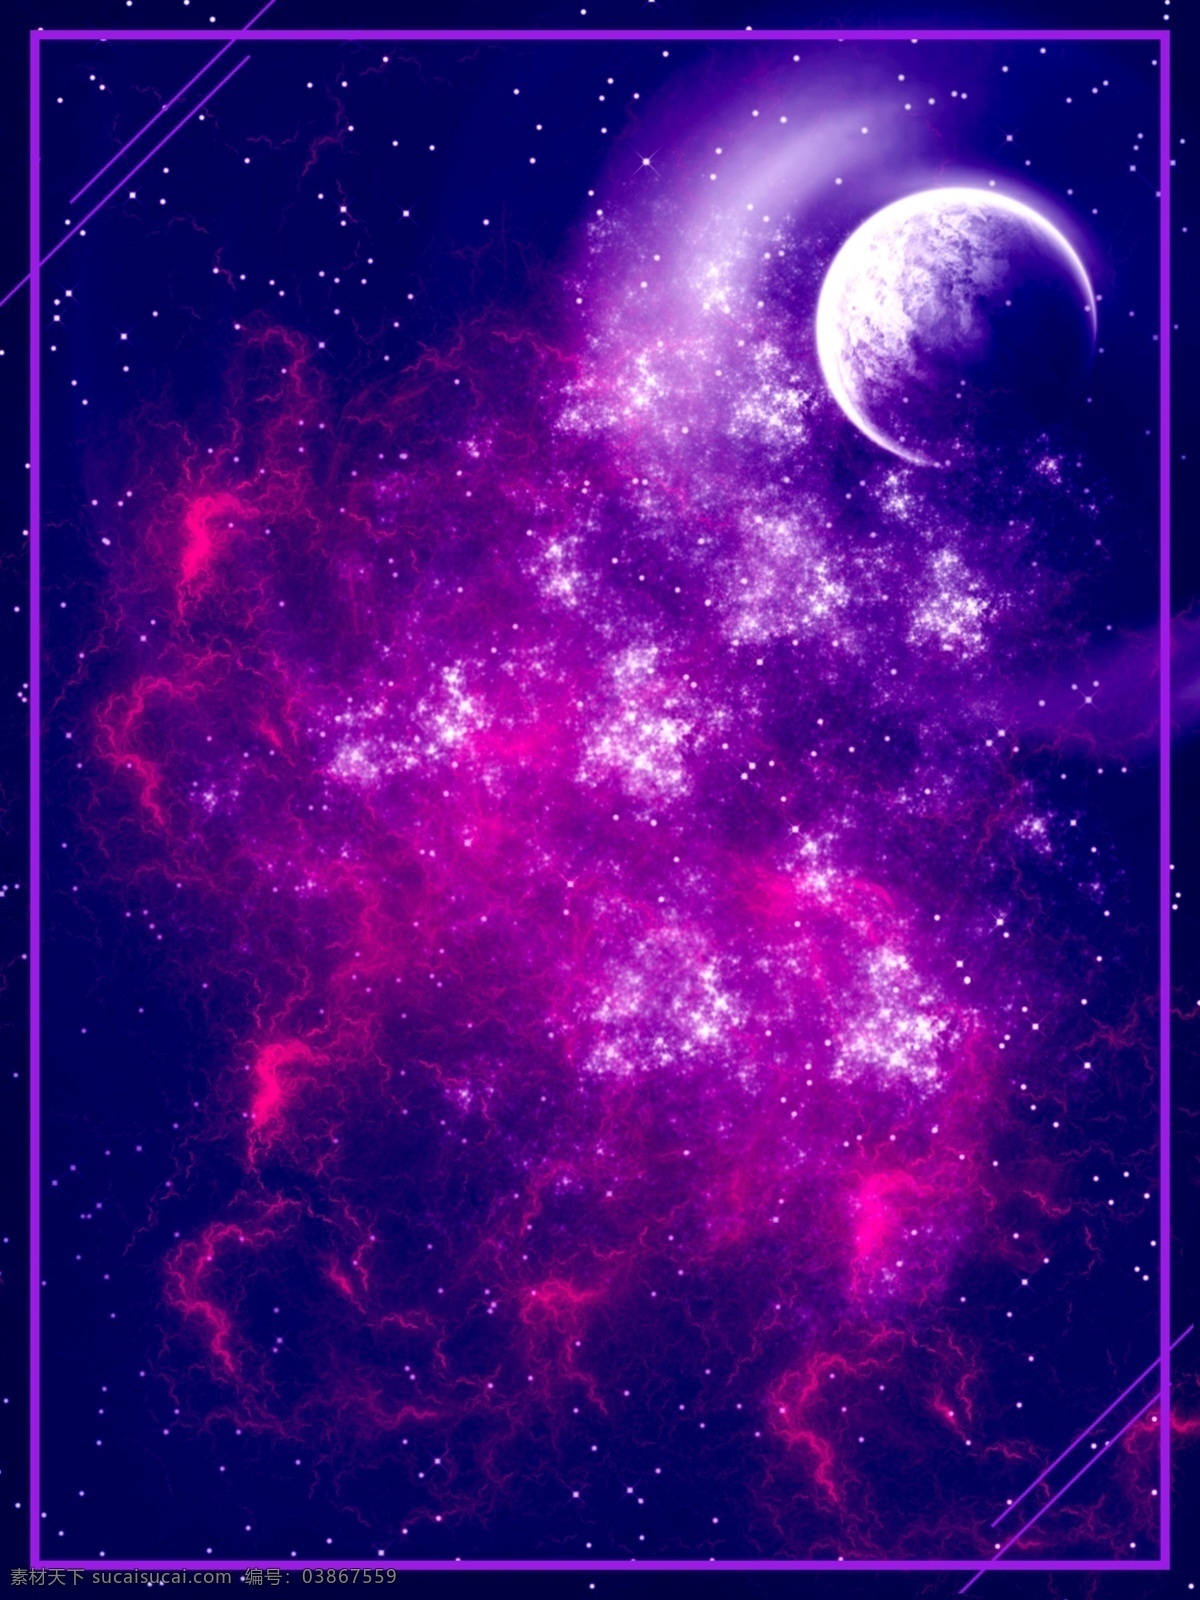 全 原创 科幻 宇宙 星空 背景 图 广告 蓝色背景 紫色背景 星星 抽象 星空背景 宇宙背景 渐变 水彩 天空 夜晚 h5背景 神秘 银河 广告背景